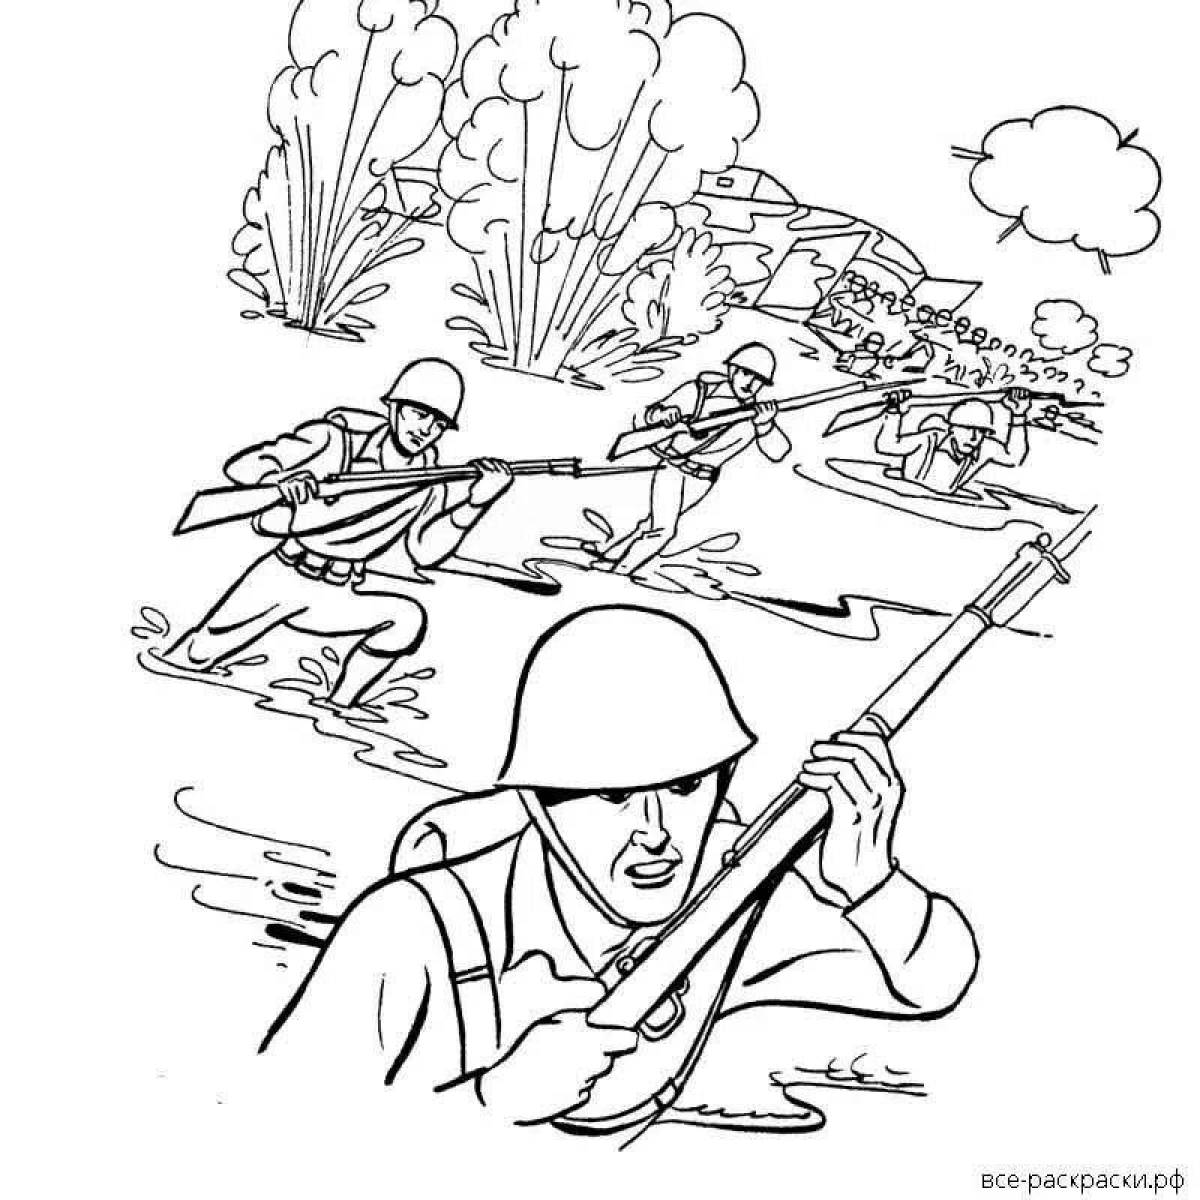 Рисунок про войну #9